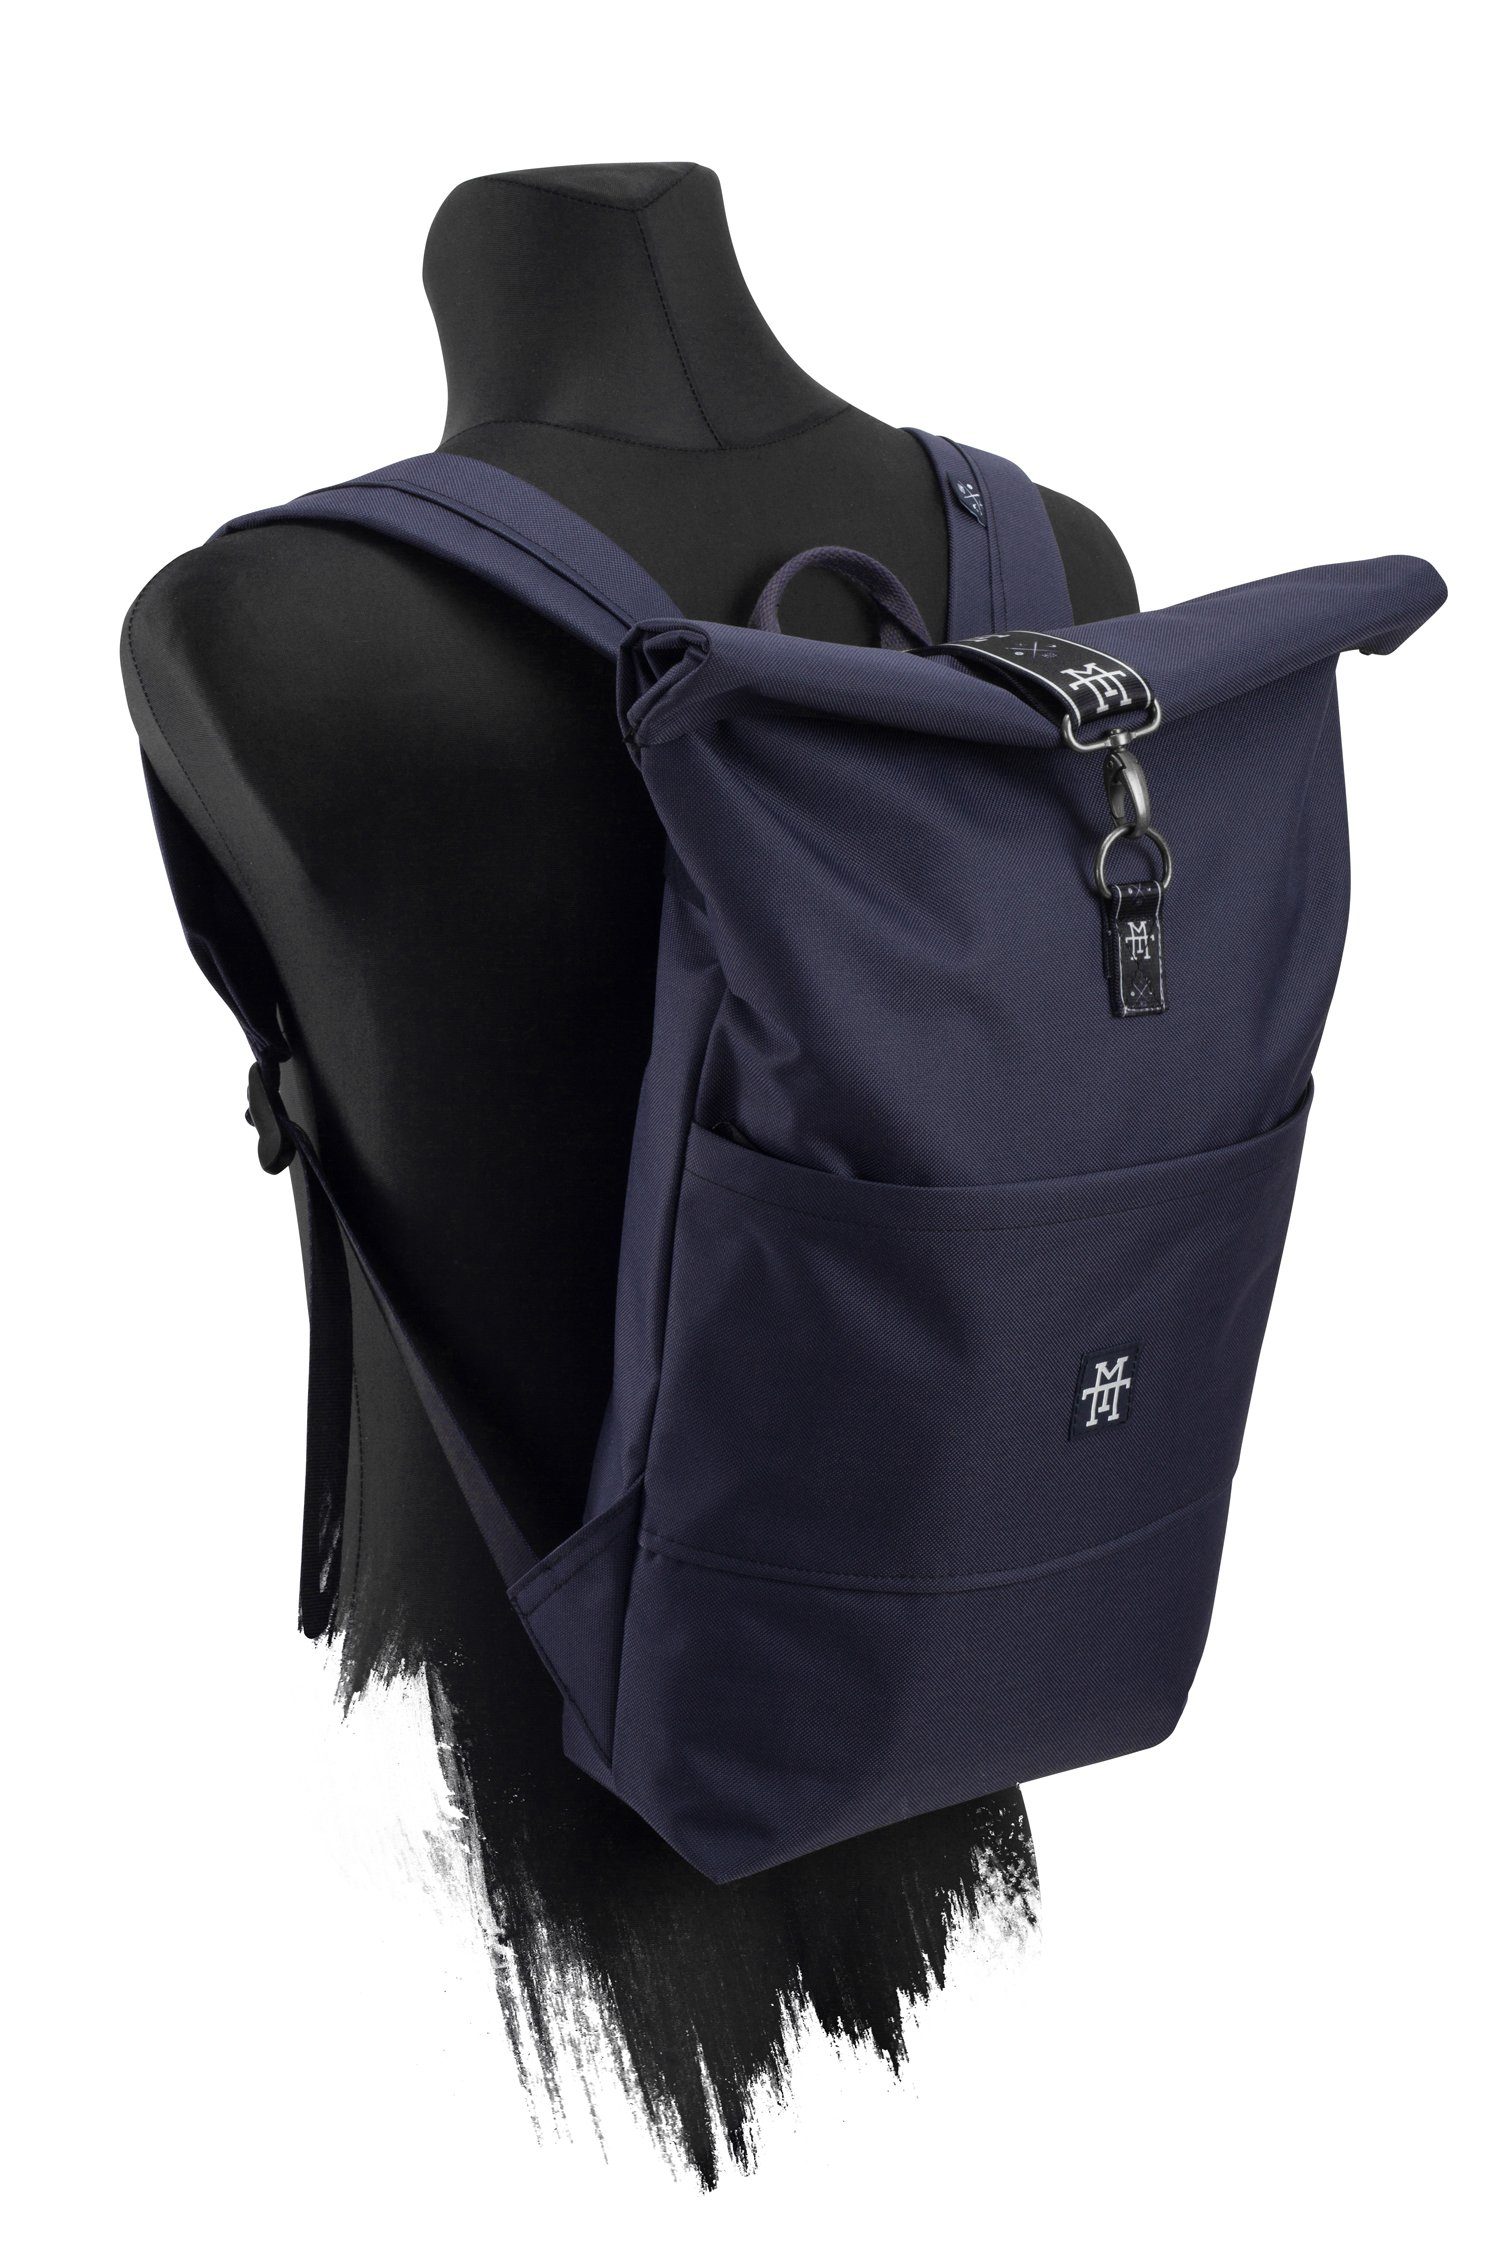 Manufaktur13 Edition Backpack verstellbare - Taped Rollverschluss, mit Roll-Top Navy Tagesrucksack Rucksack wasserdicht/wasserabweisend, Gurte